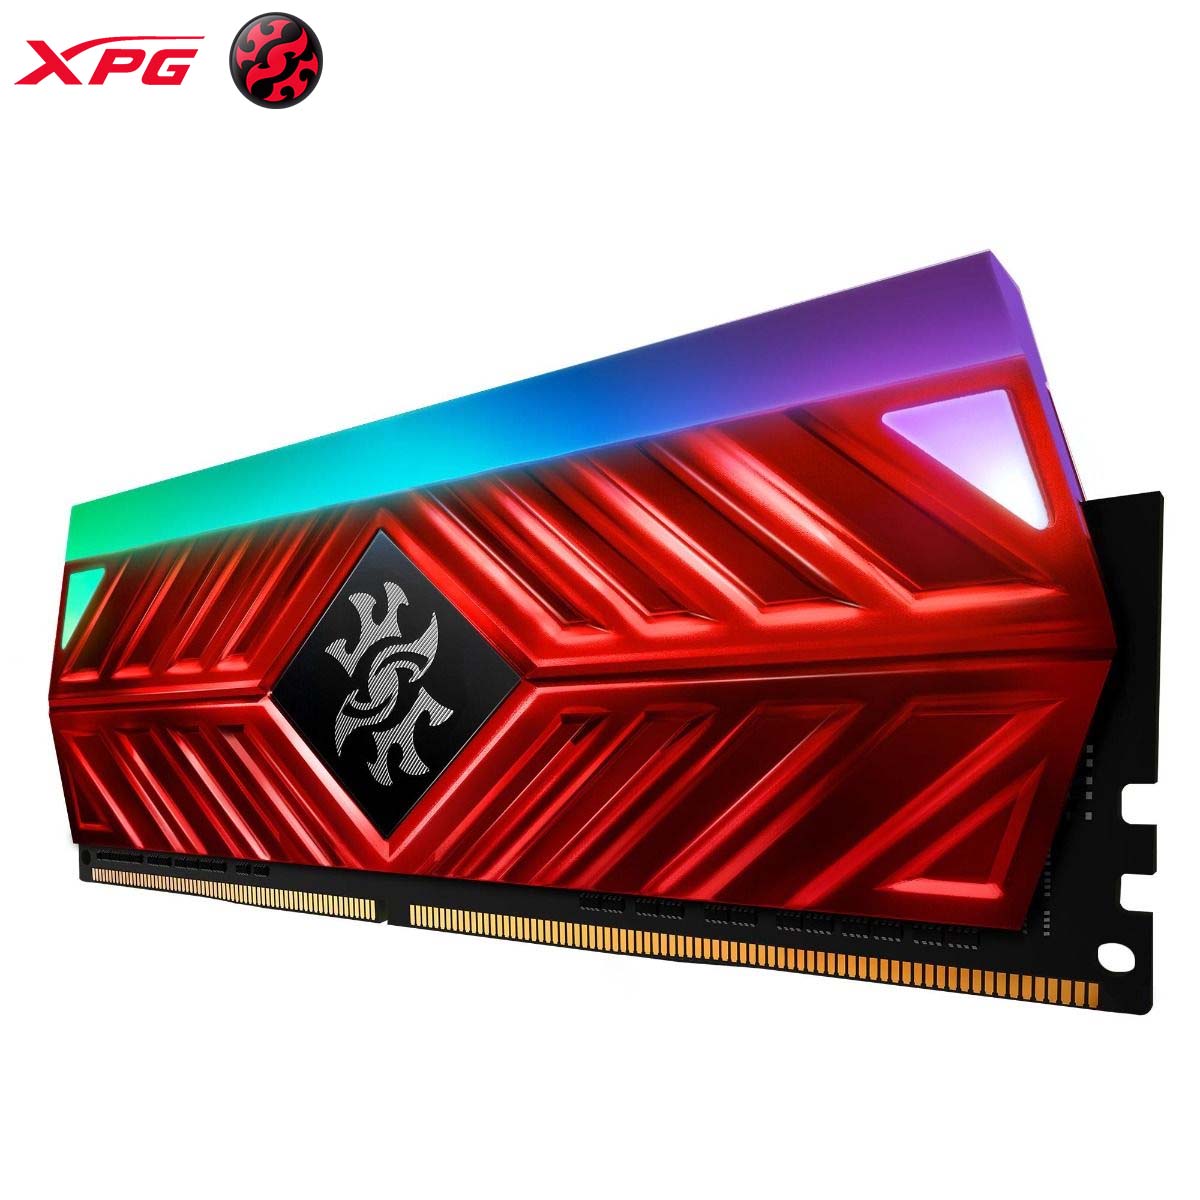 XPG SPECTRIX D41 32GB (2 x 16GB) DDR4 SDRAM Memory Kit